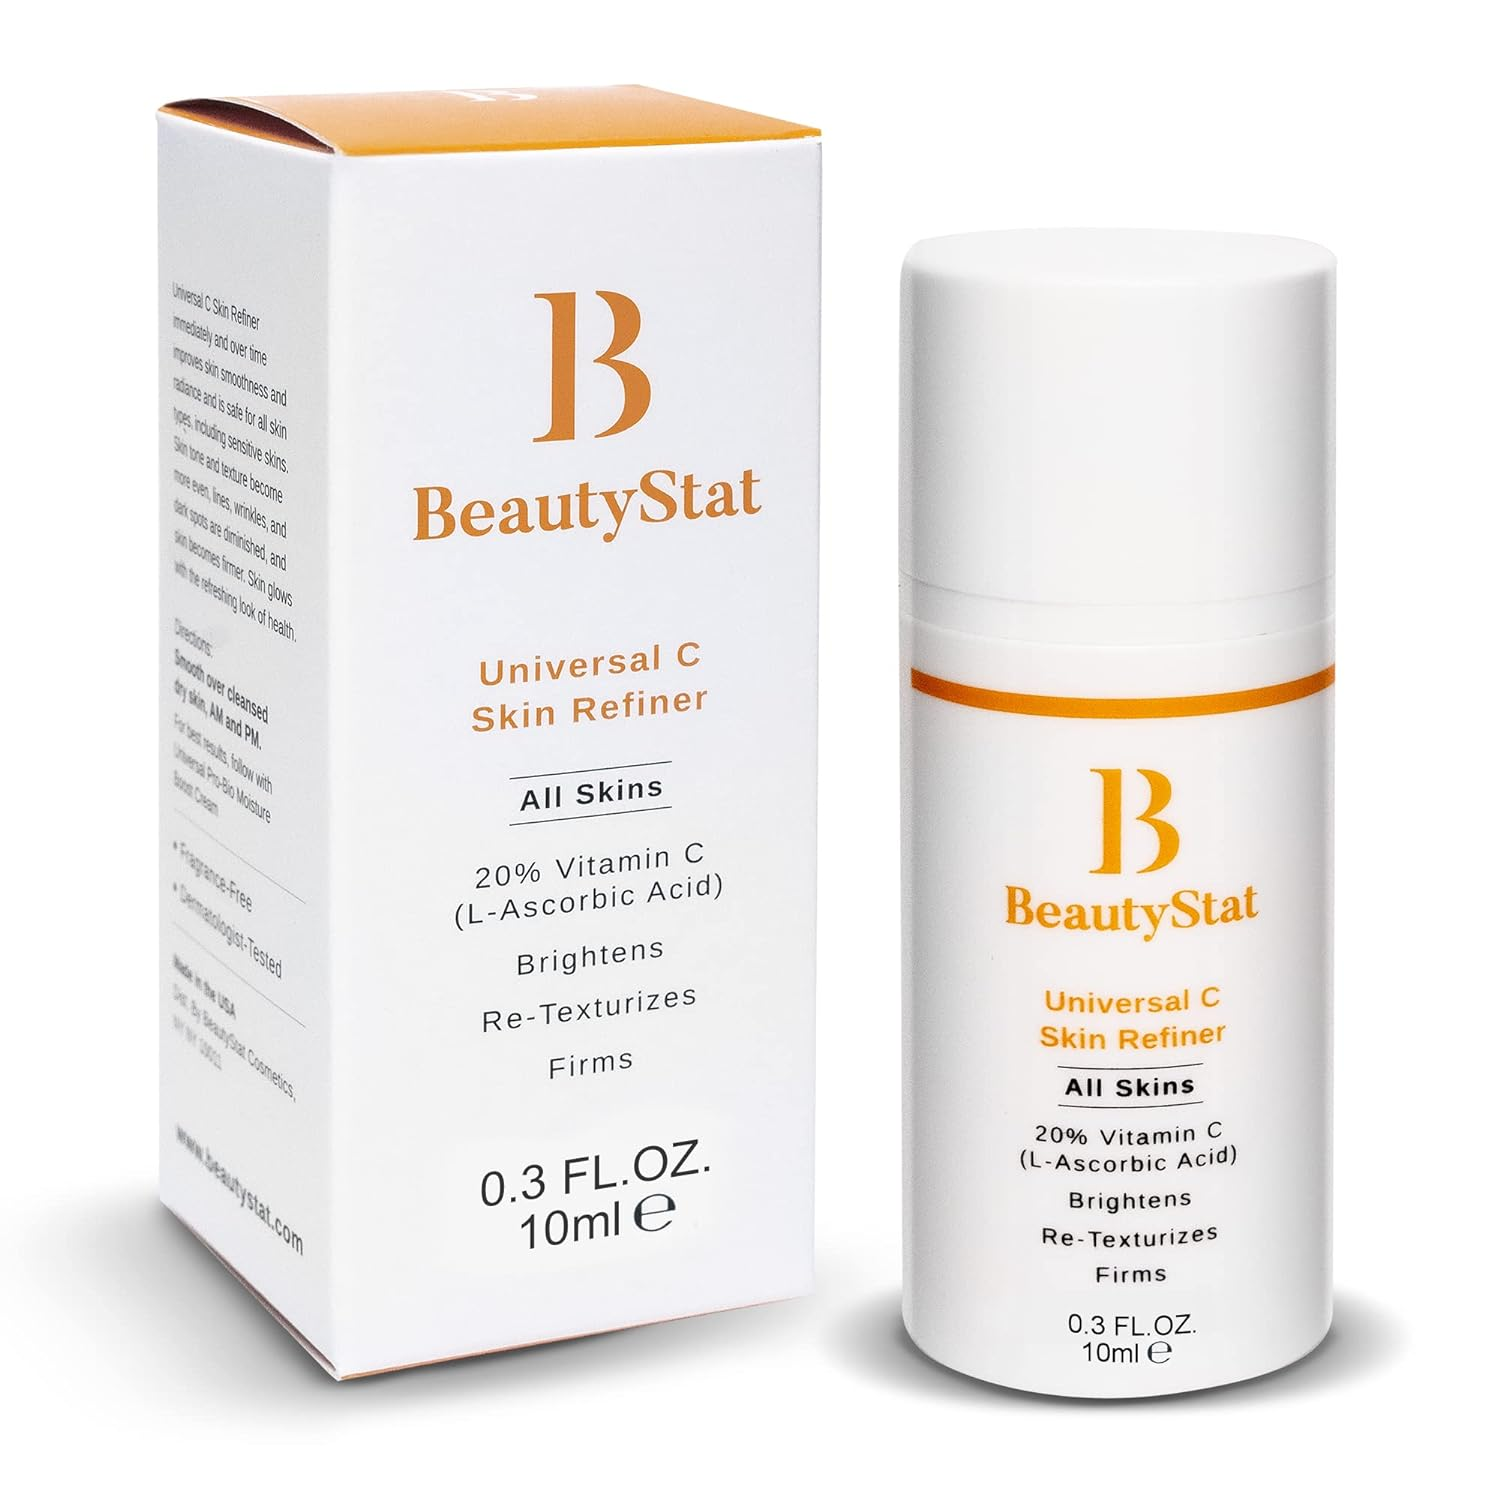 Universal C Skin Refiner de Beauty Stat